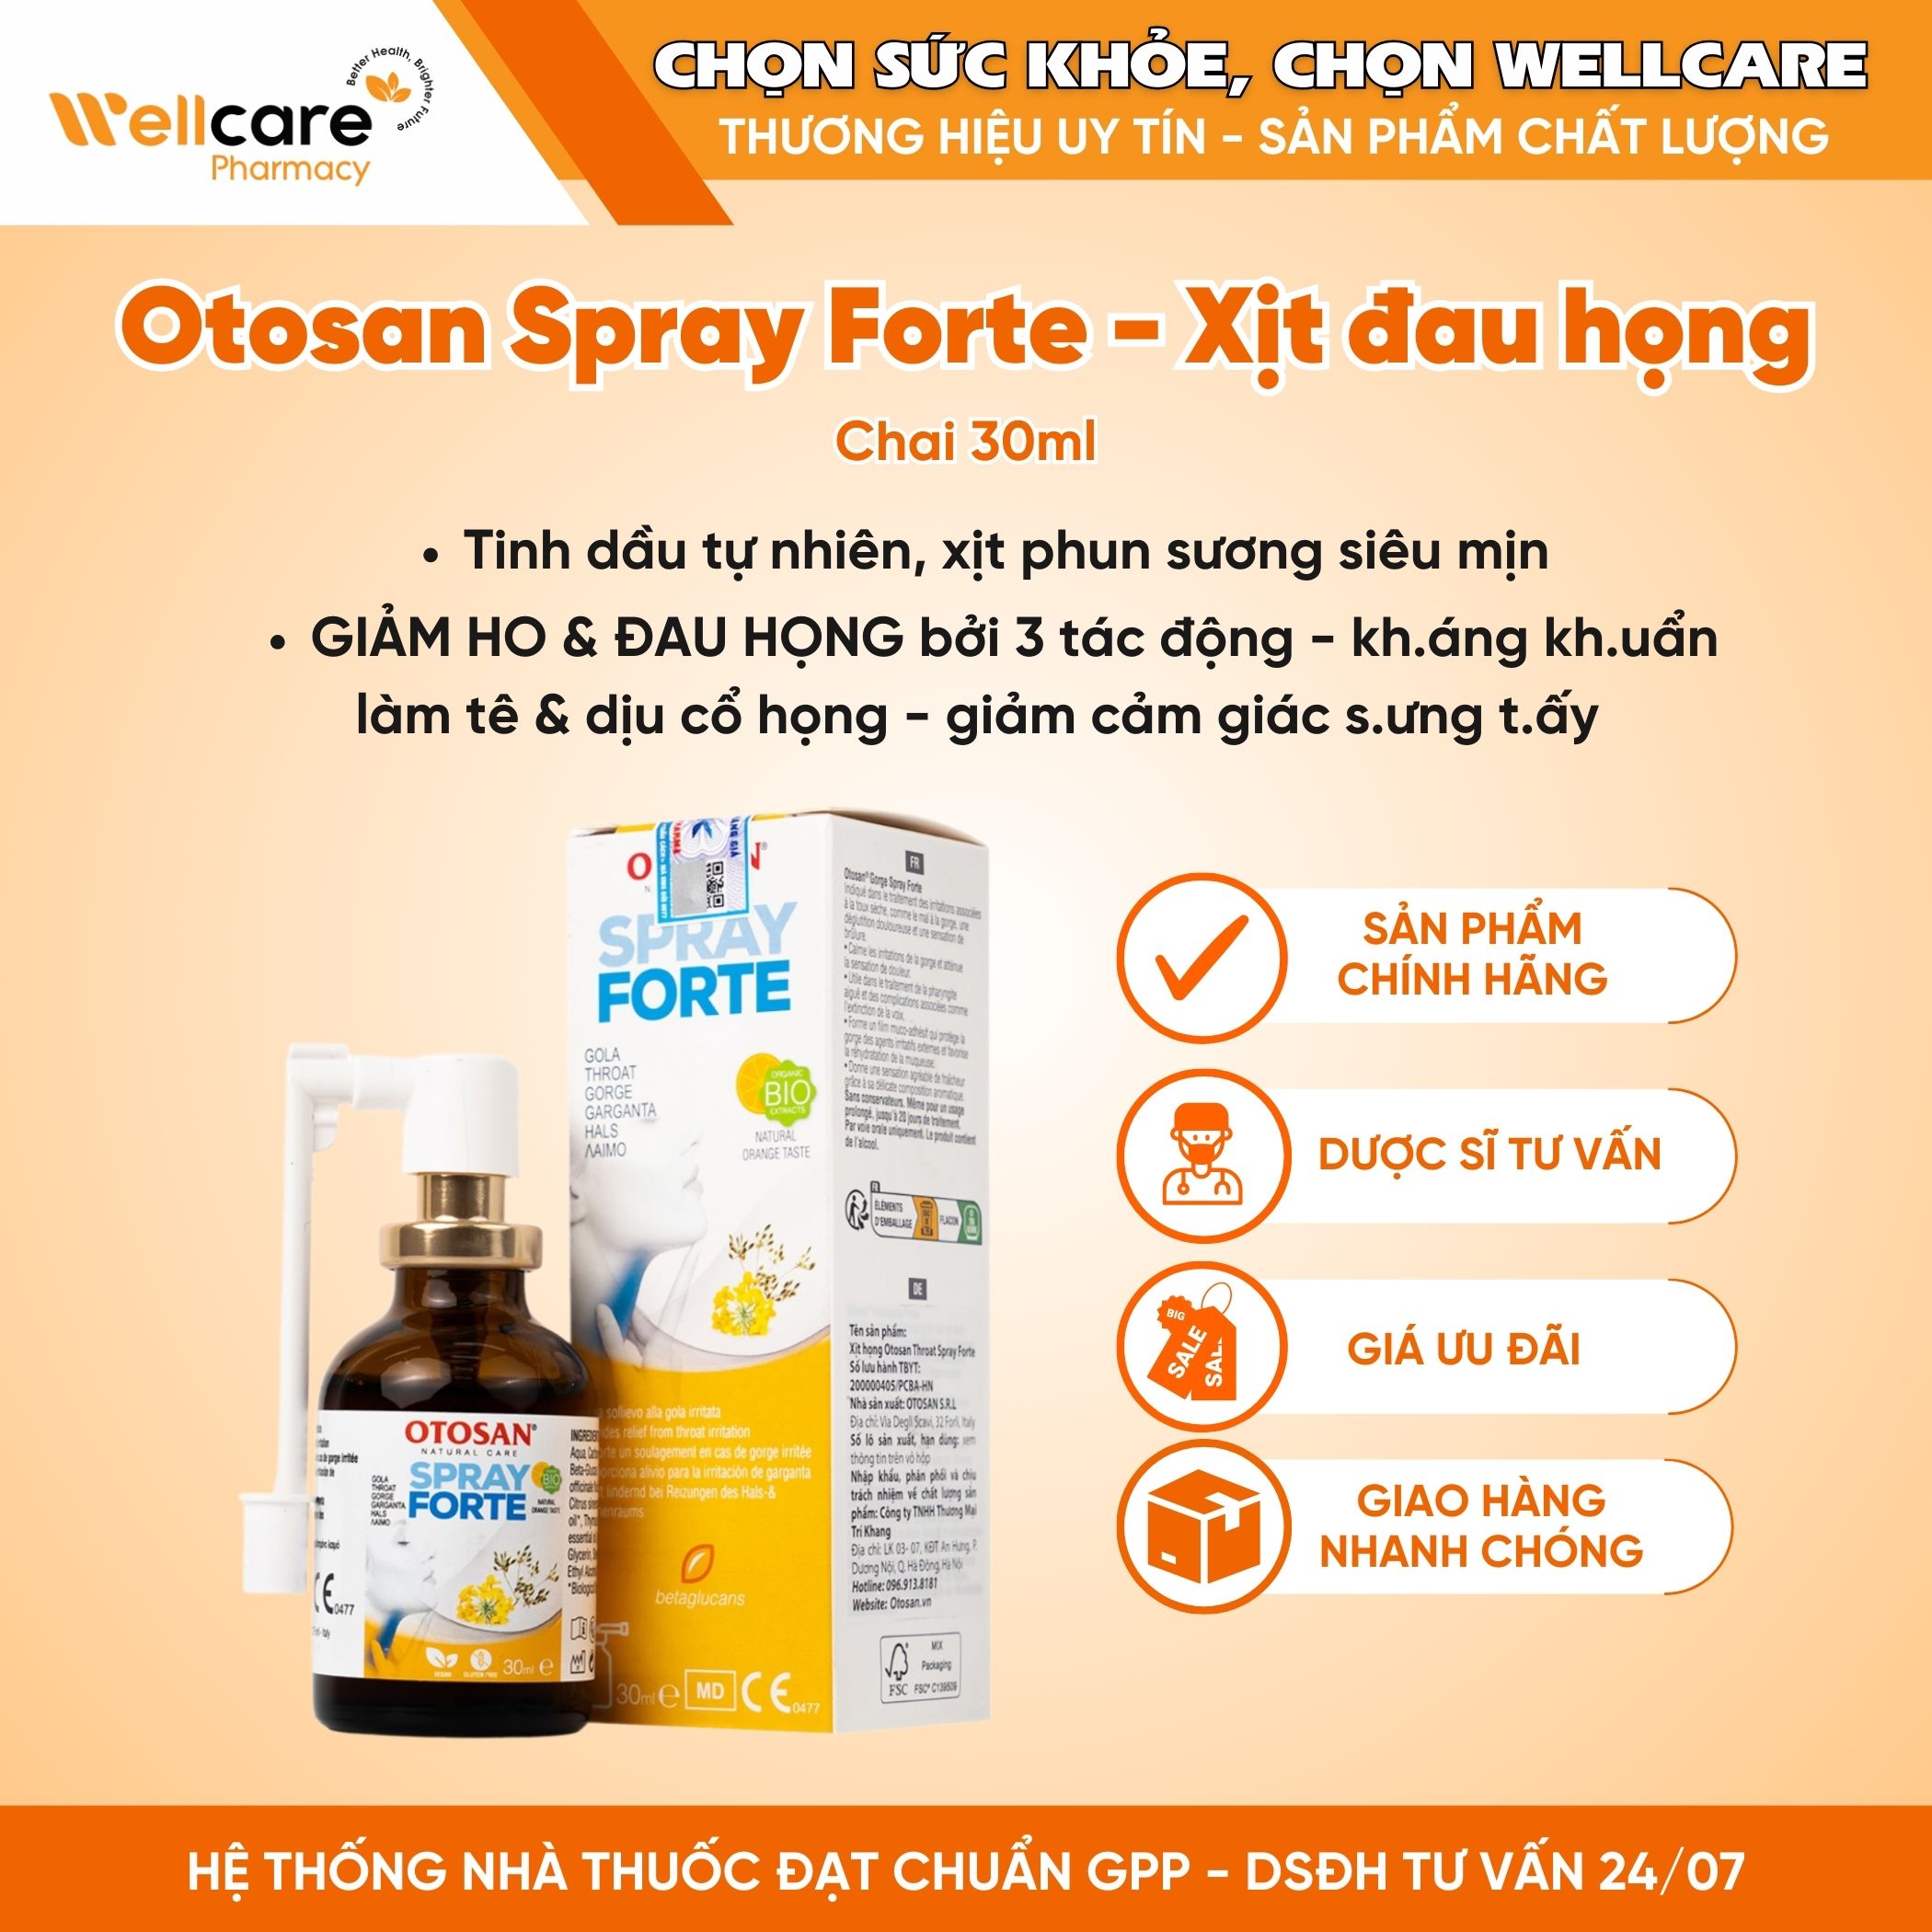 Throat Spray Otosan – Dung Dịch Xịt Họng Giúp Giảm Ho, Đau Họng (Chai 30ml)